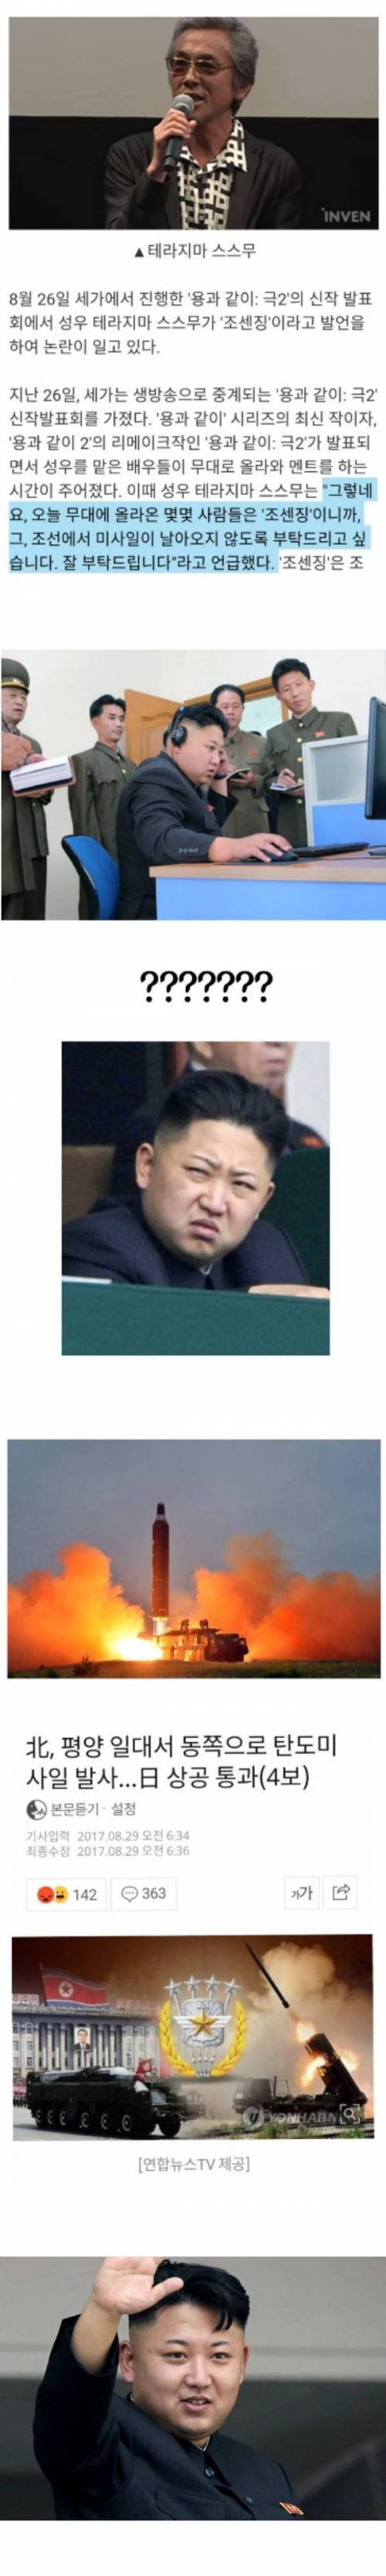 북한의 미사일 발사 목적.jpg